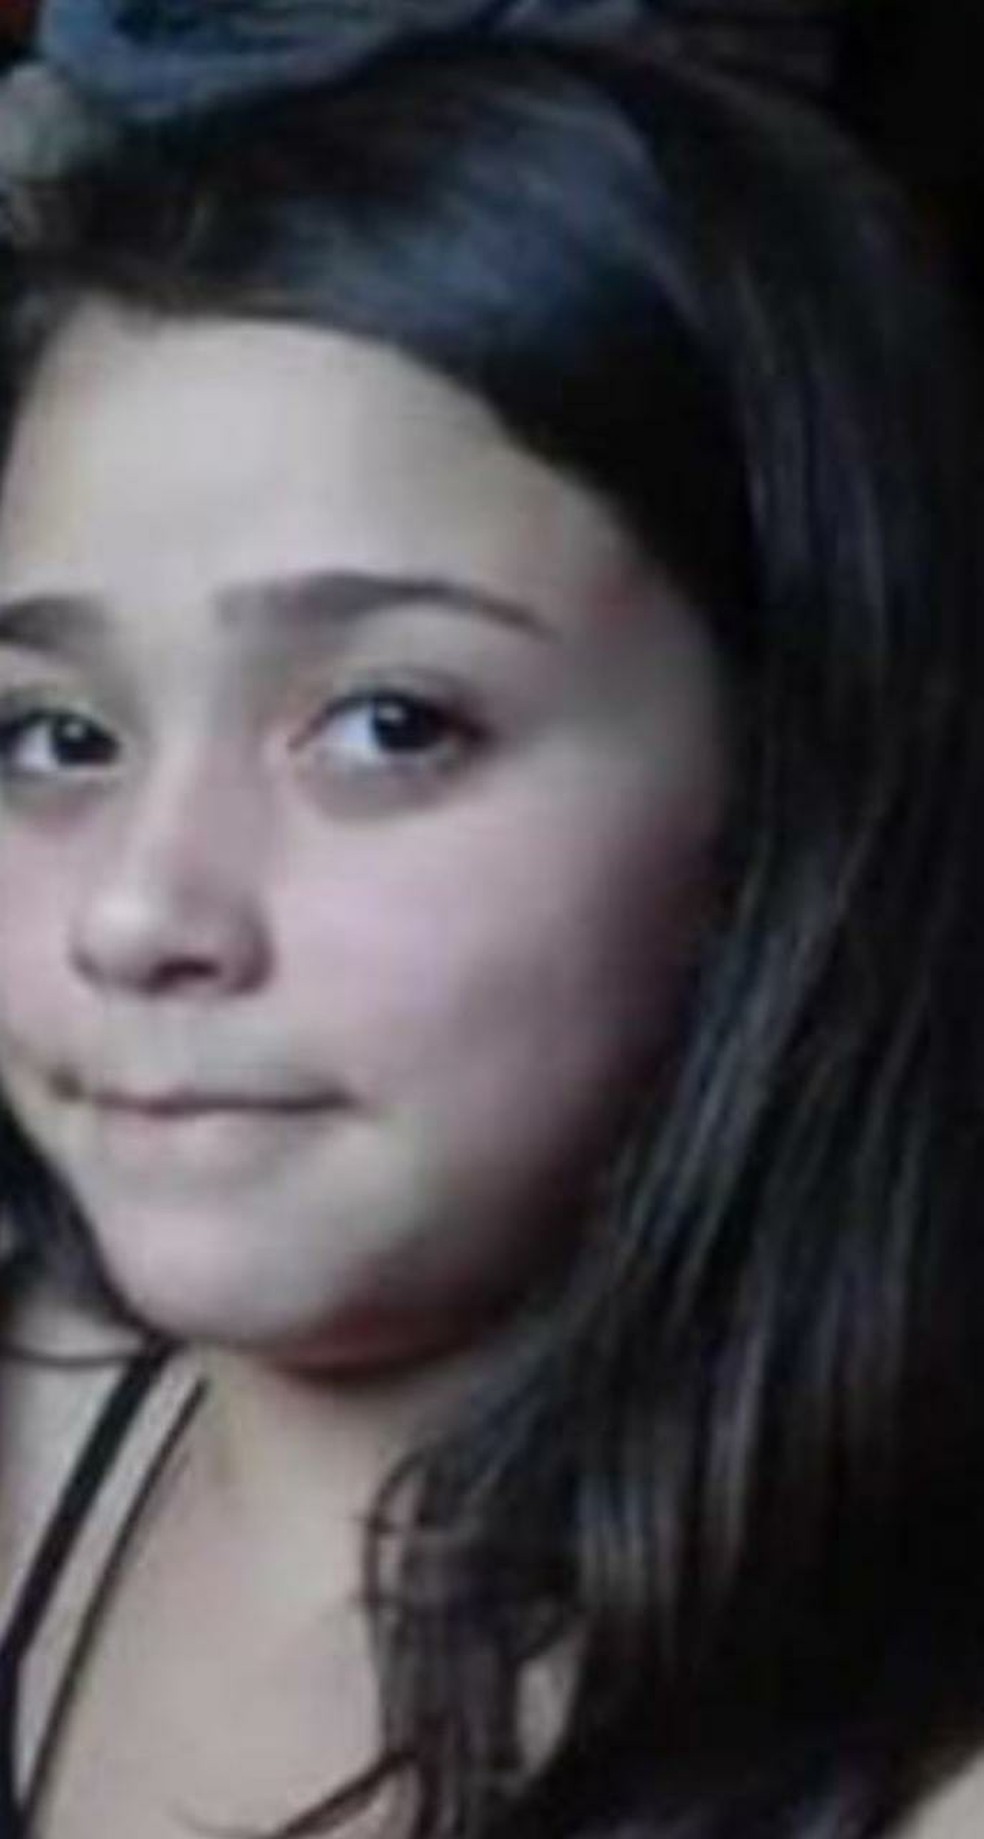 Corpo de menina de 12 anos morta por bala perdida é enterrado